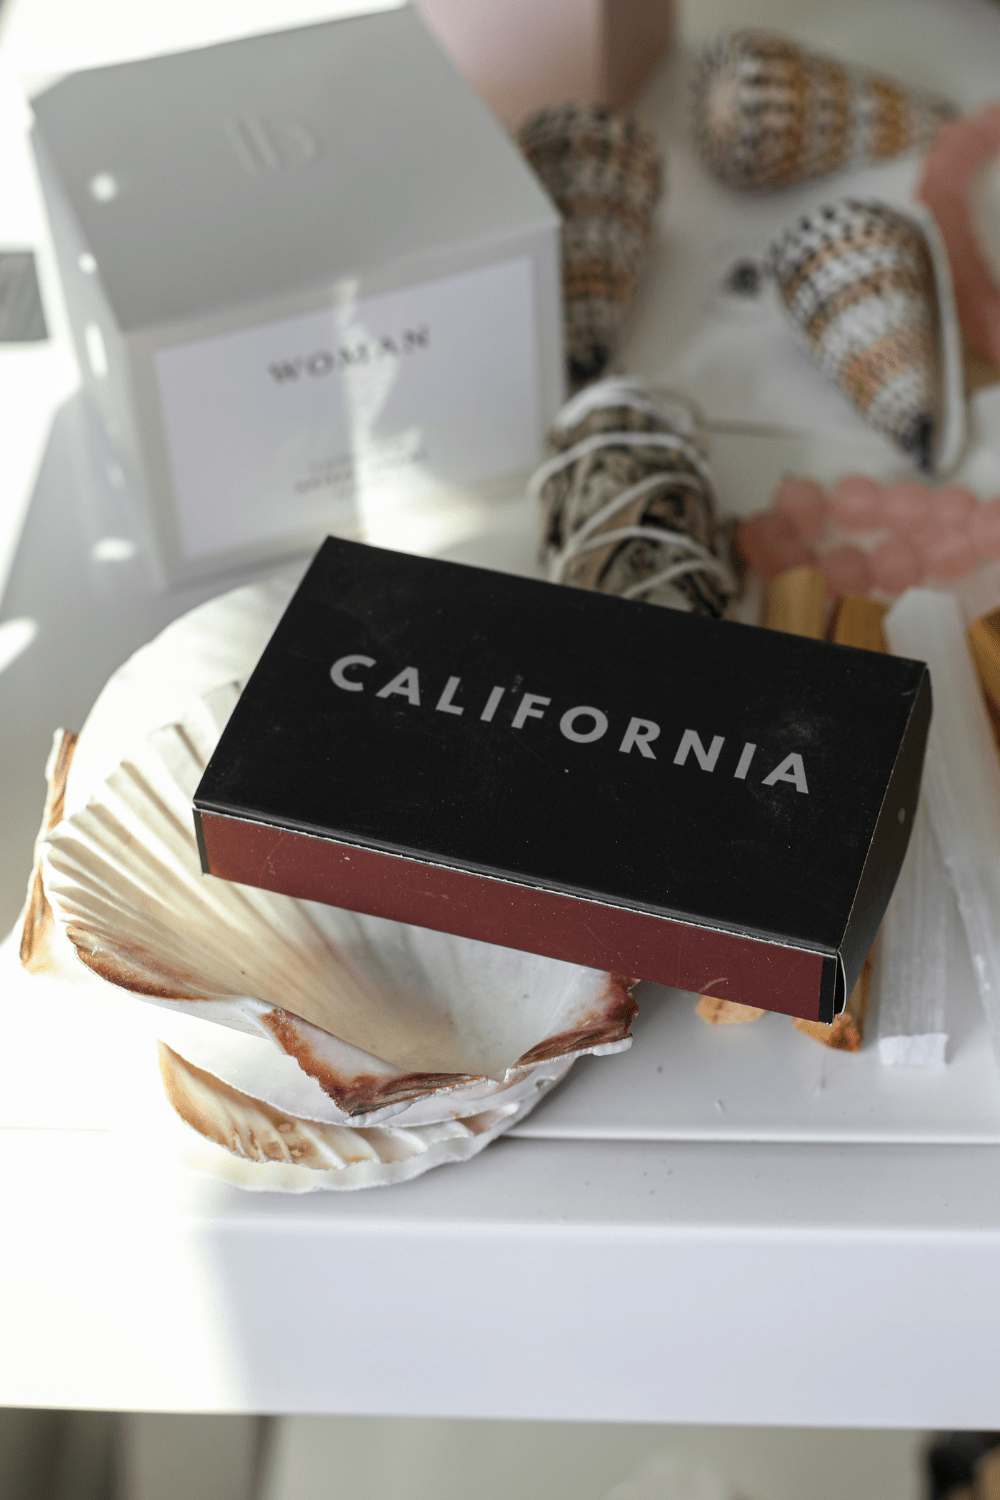 Luxe B California Matchbox - Luxe B Co